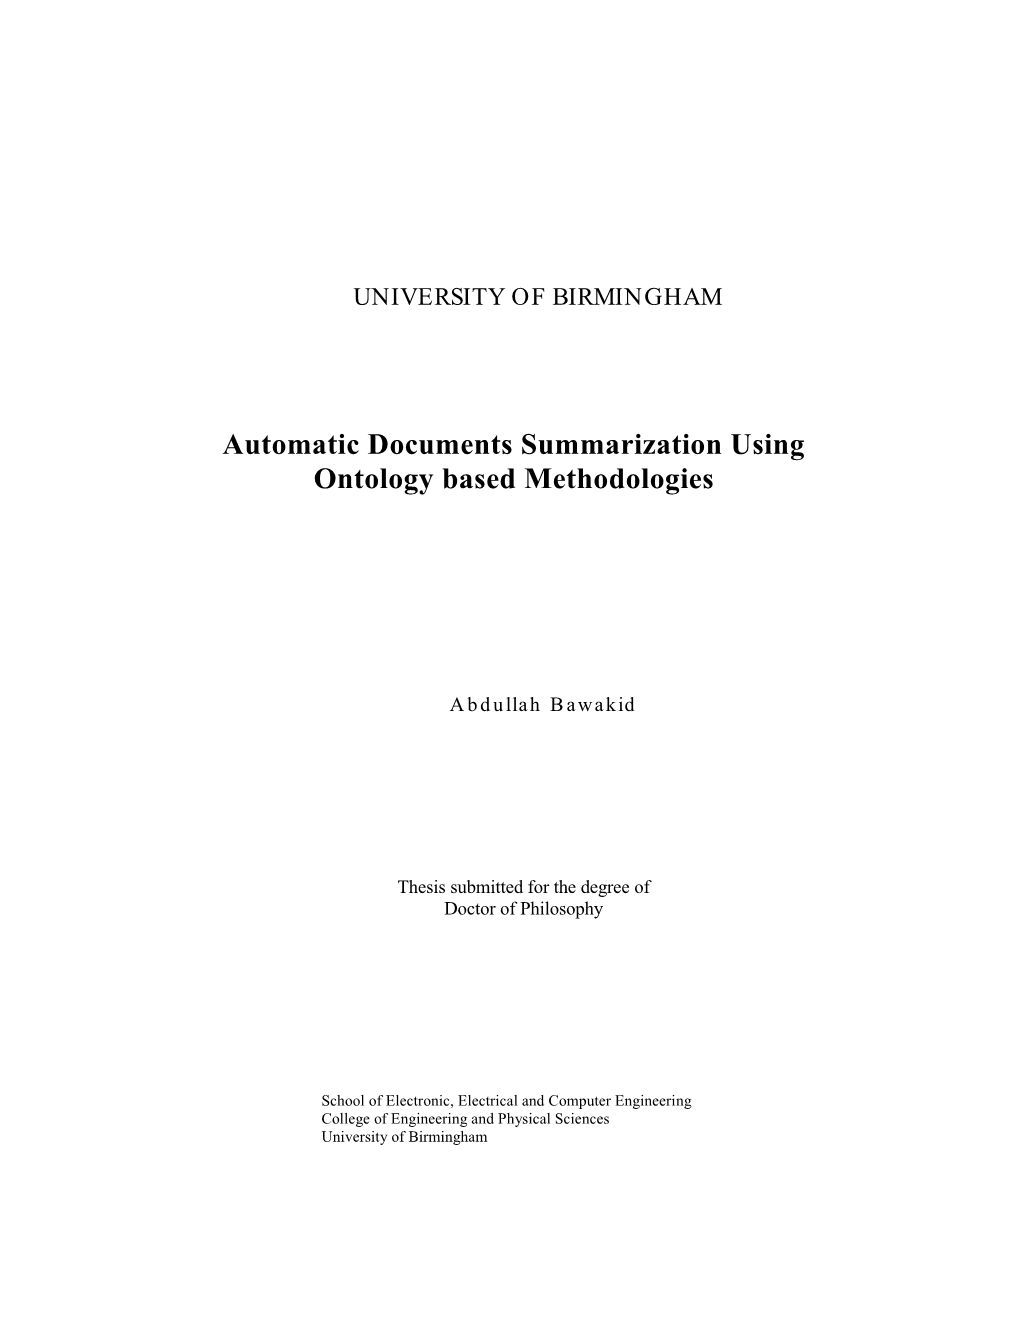 Automatic Documents Summarization Using Ontology Based Methodologies